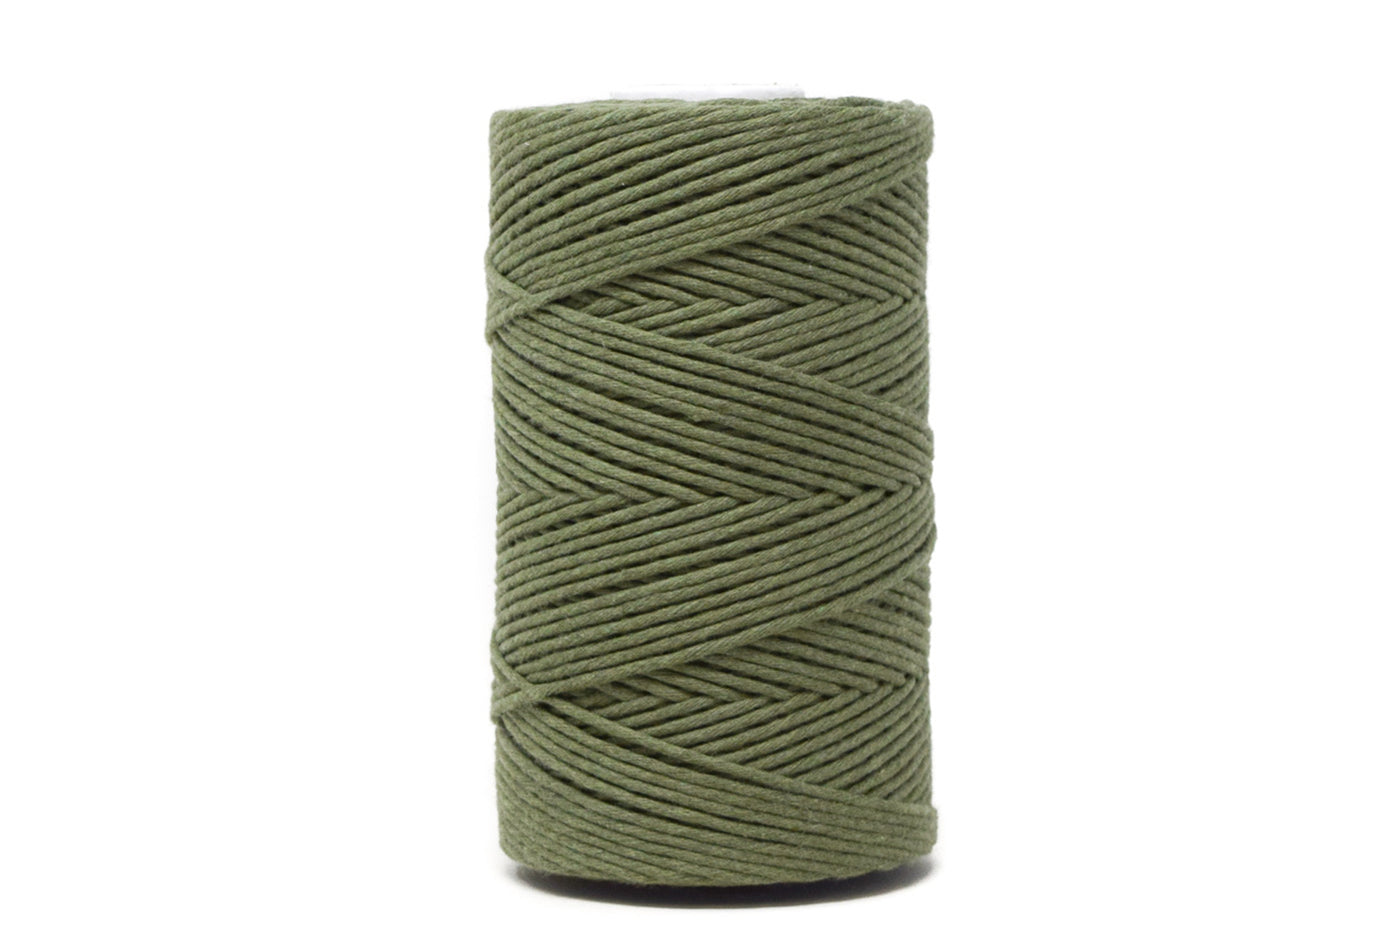 Soft Cotton Cords - Zero Waste - Single Strand 2 mm